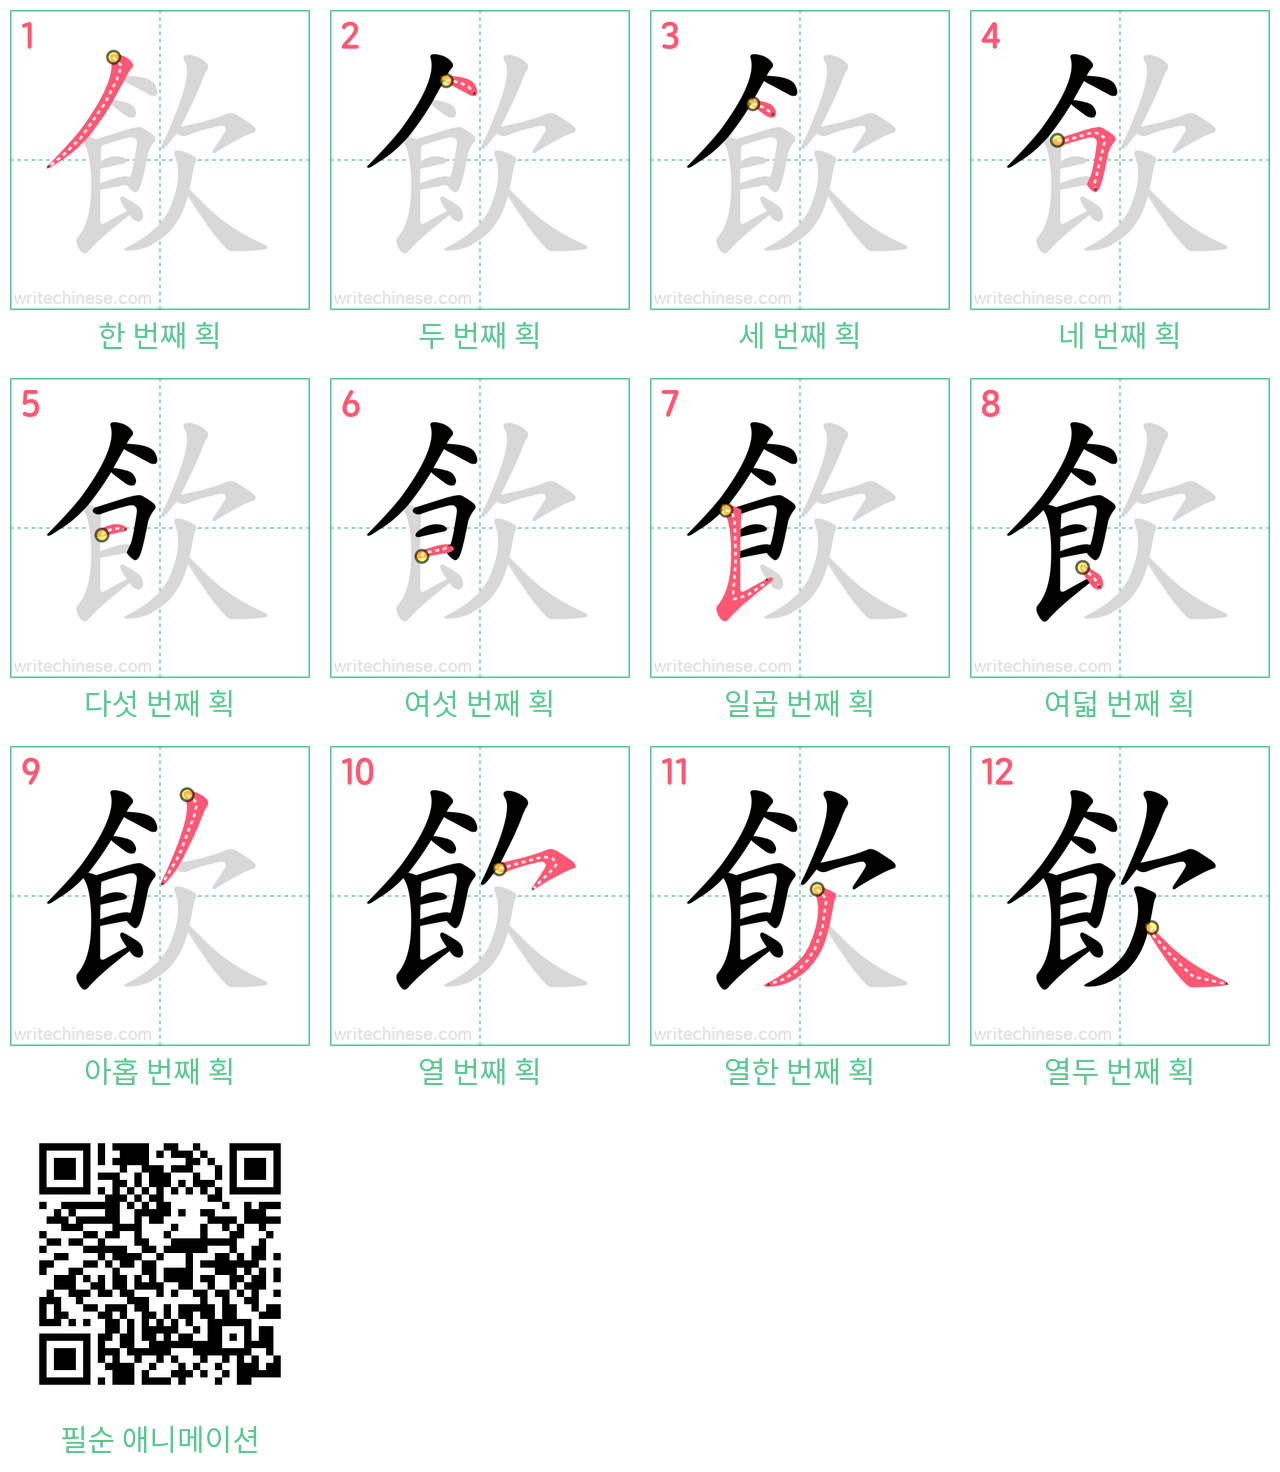 飲 step-by-step stroke order diagrams